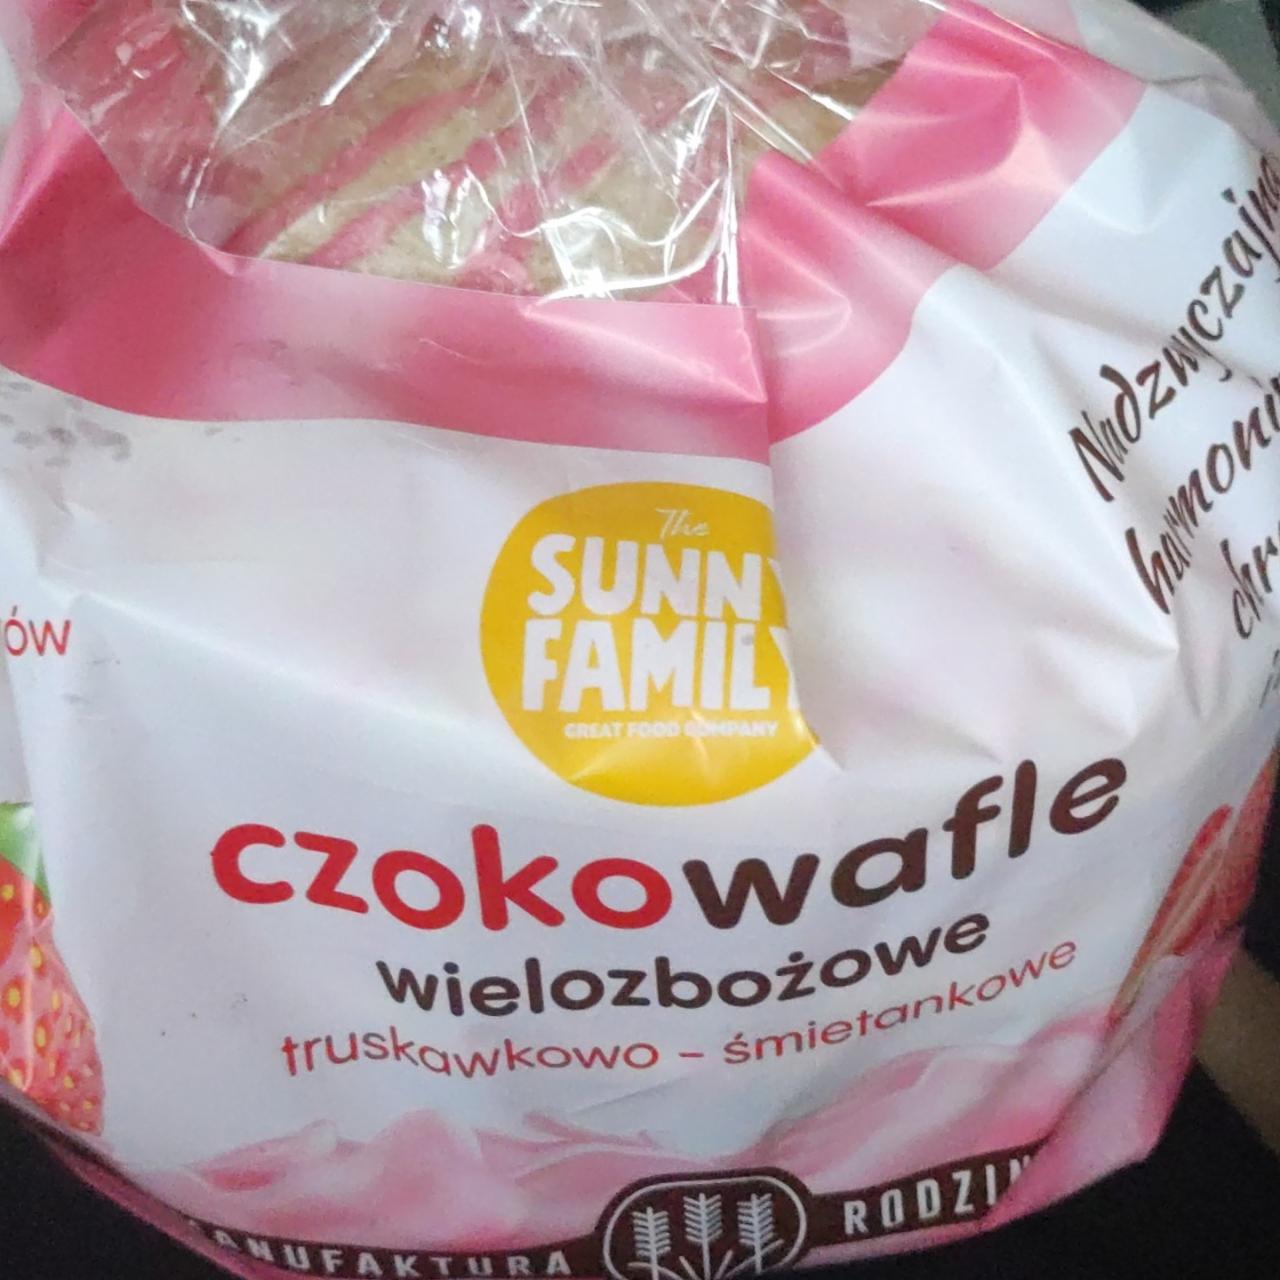 Zdjęcia - Sunny Family Czokowafle wielozbożowe truskawkowo-śmietankowe 140 g (12 sztuk)